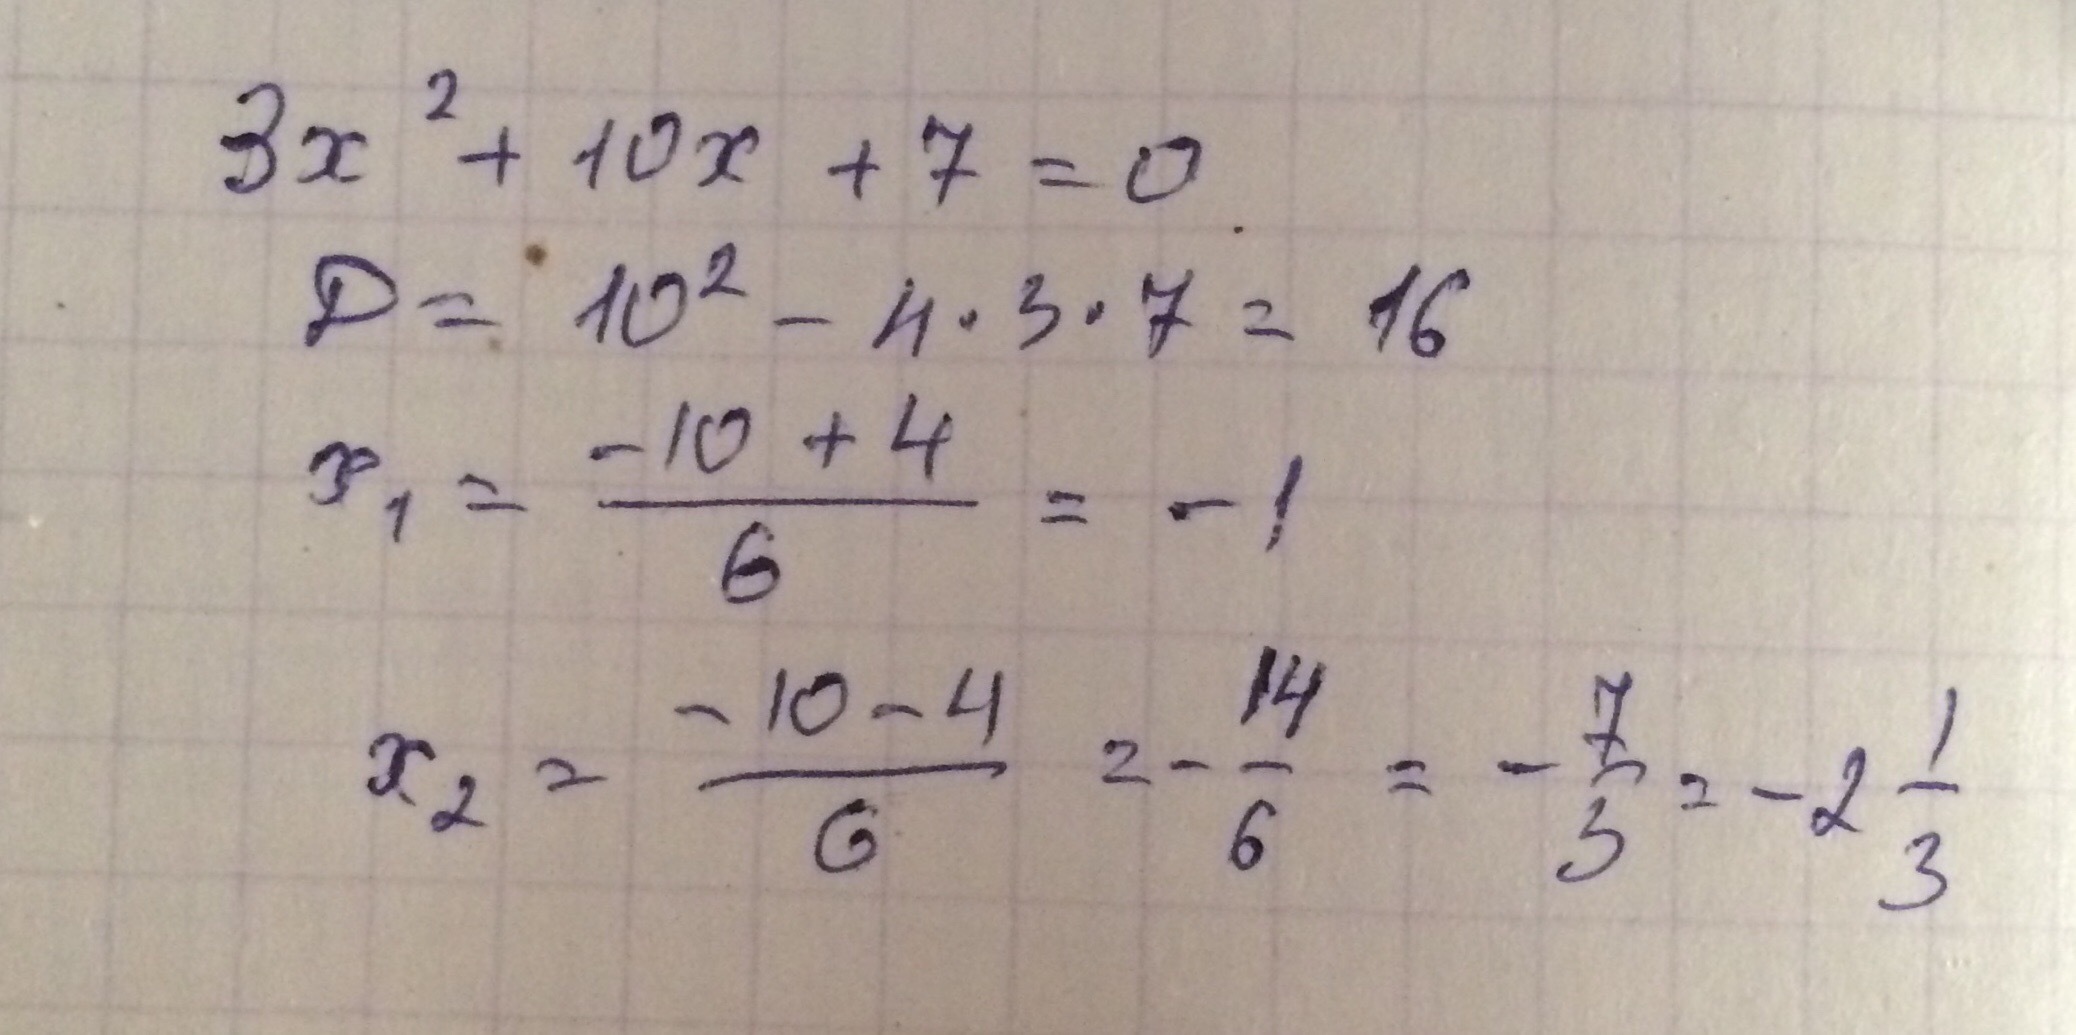 3 16 плюс 1 16 равно. X В квадрате плюс 3x равно 4. X В квадрате равно 3. Минус 3 в квадрате равно. Х В квадрате равно 3х.